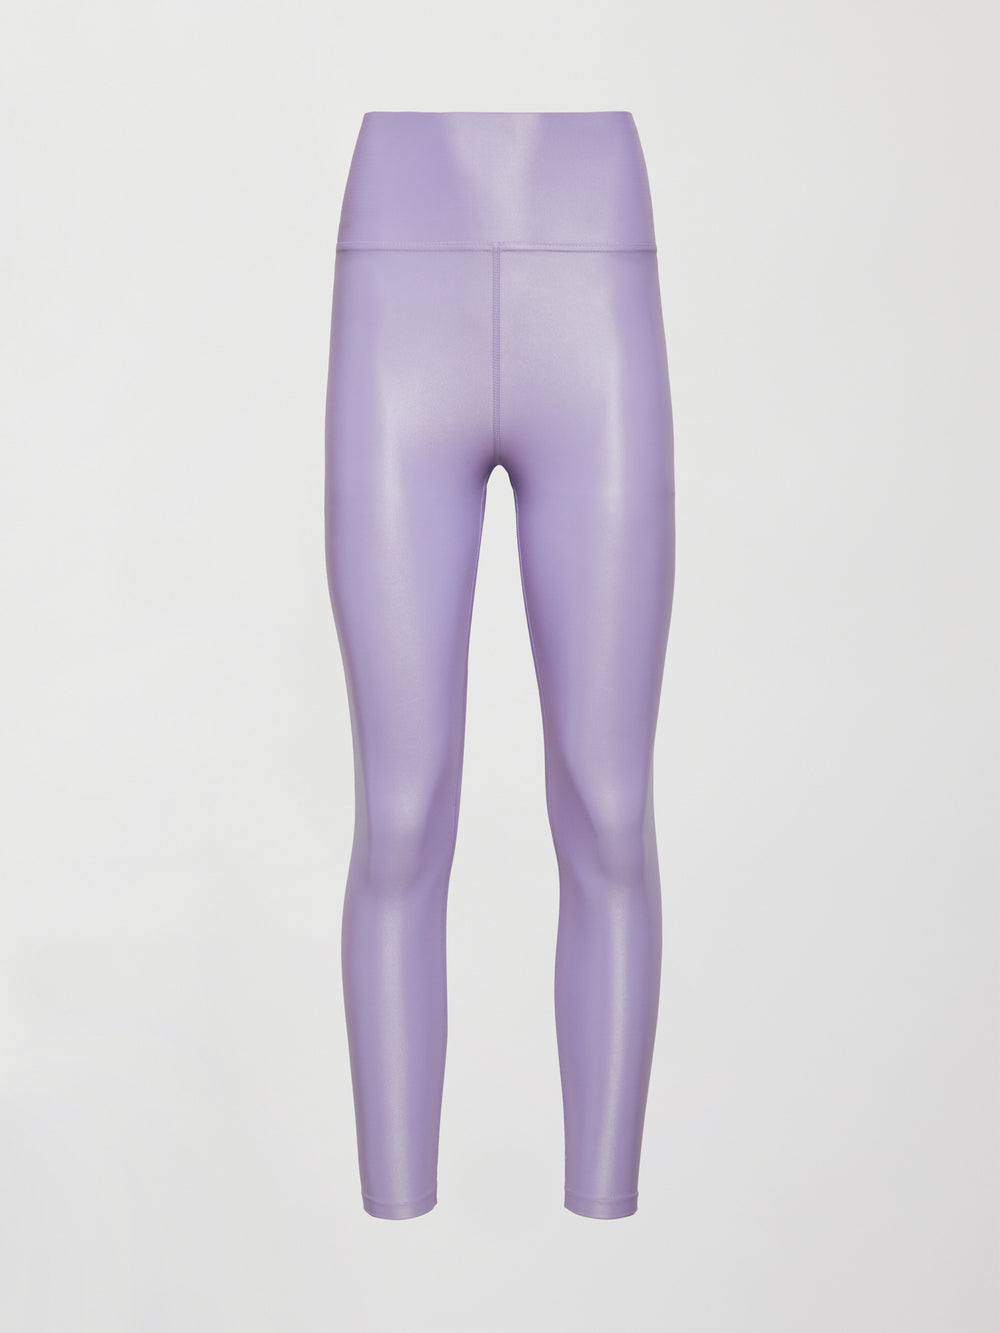 Carbon 38 Takara Shine Leggings Pink Size M - $18 (85% Off Retail) - From  Kristen